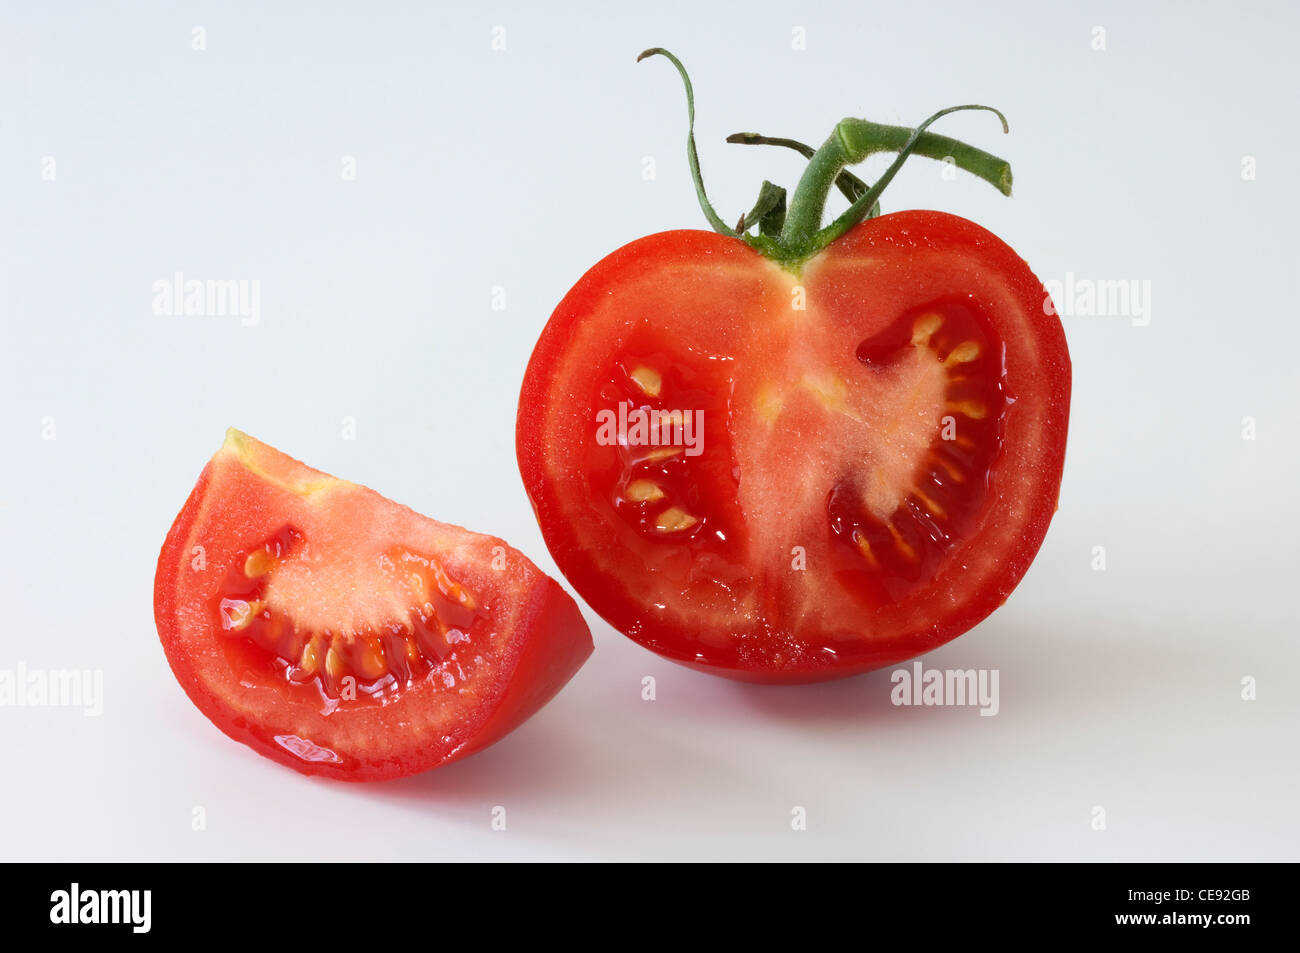 La tomate (Lycopersicon esculentum), moitié des fruits. Studio photo sur un fond blanc. Banque D'Images